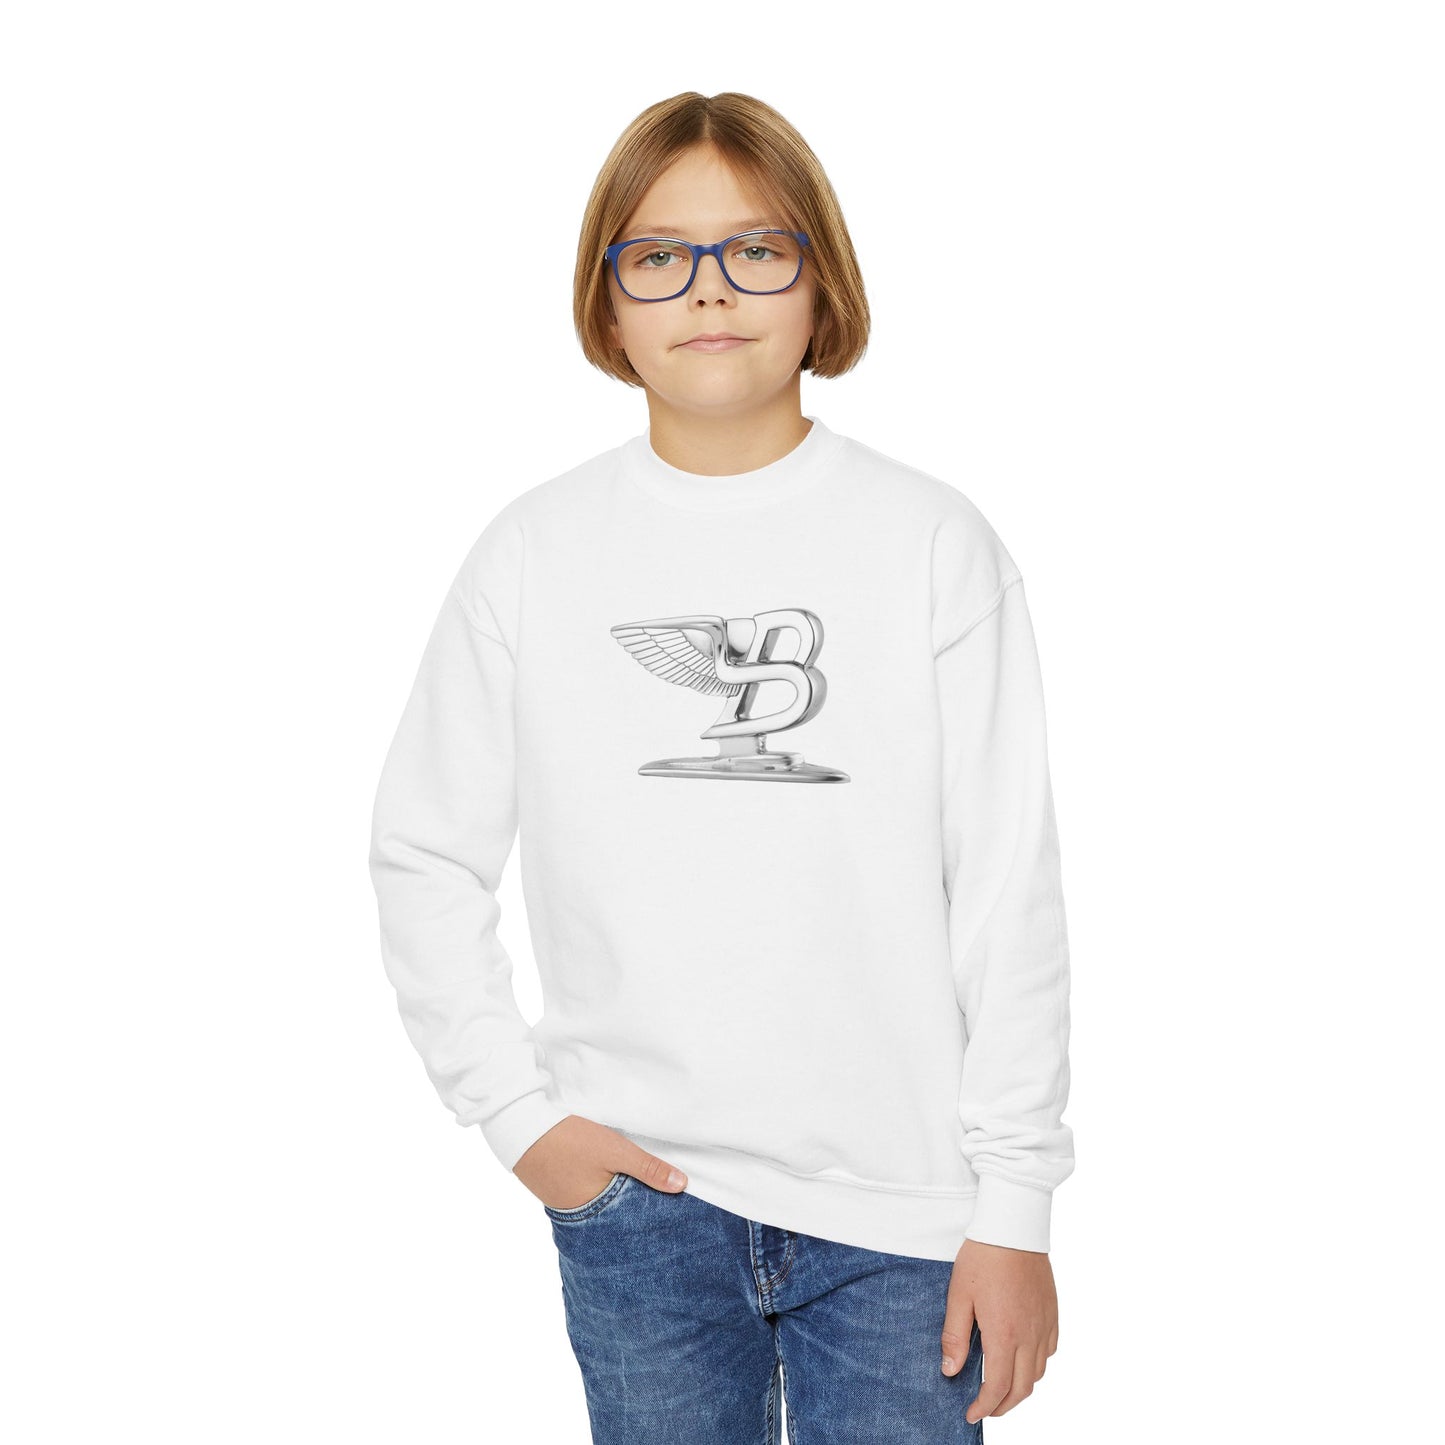 Bentley Flying B Youth Sweatshirt